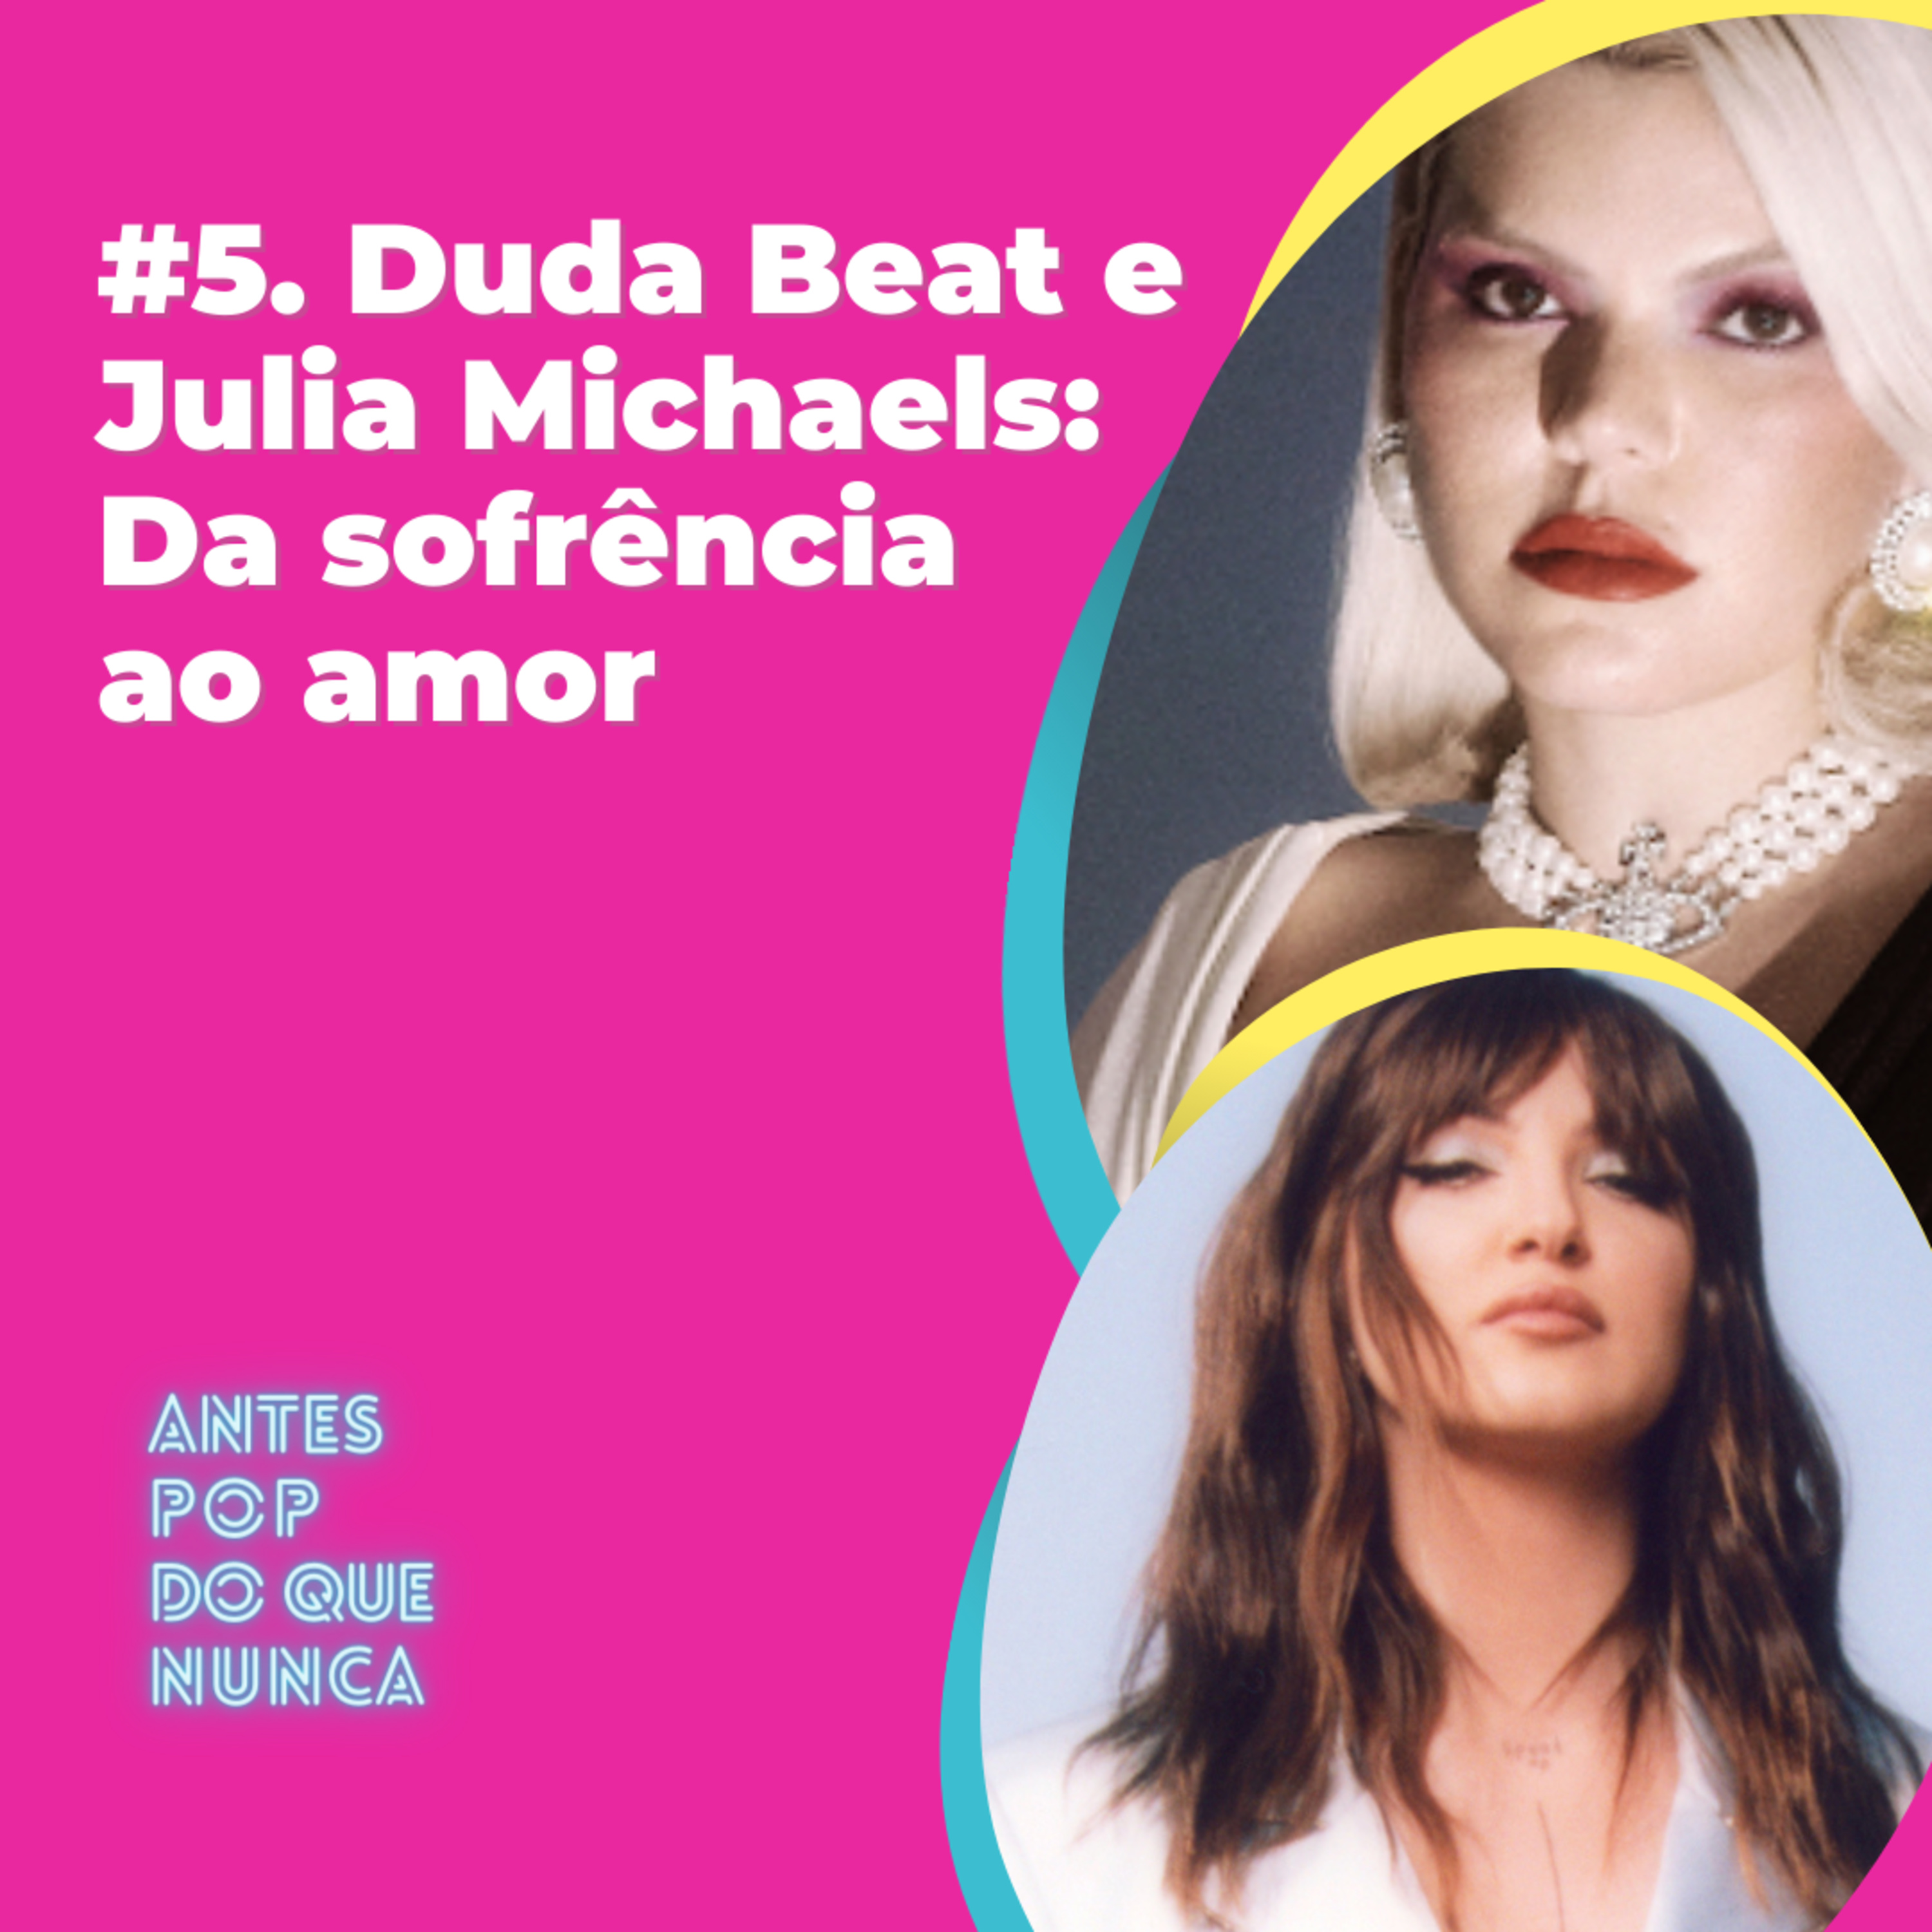 #5. Duda Beat e Julia Michaels: Da sofrência ao amor